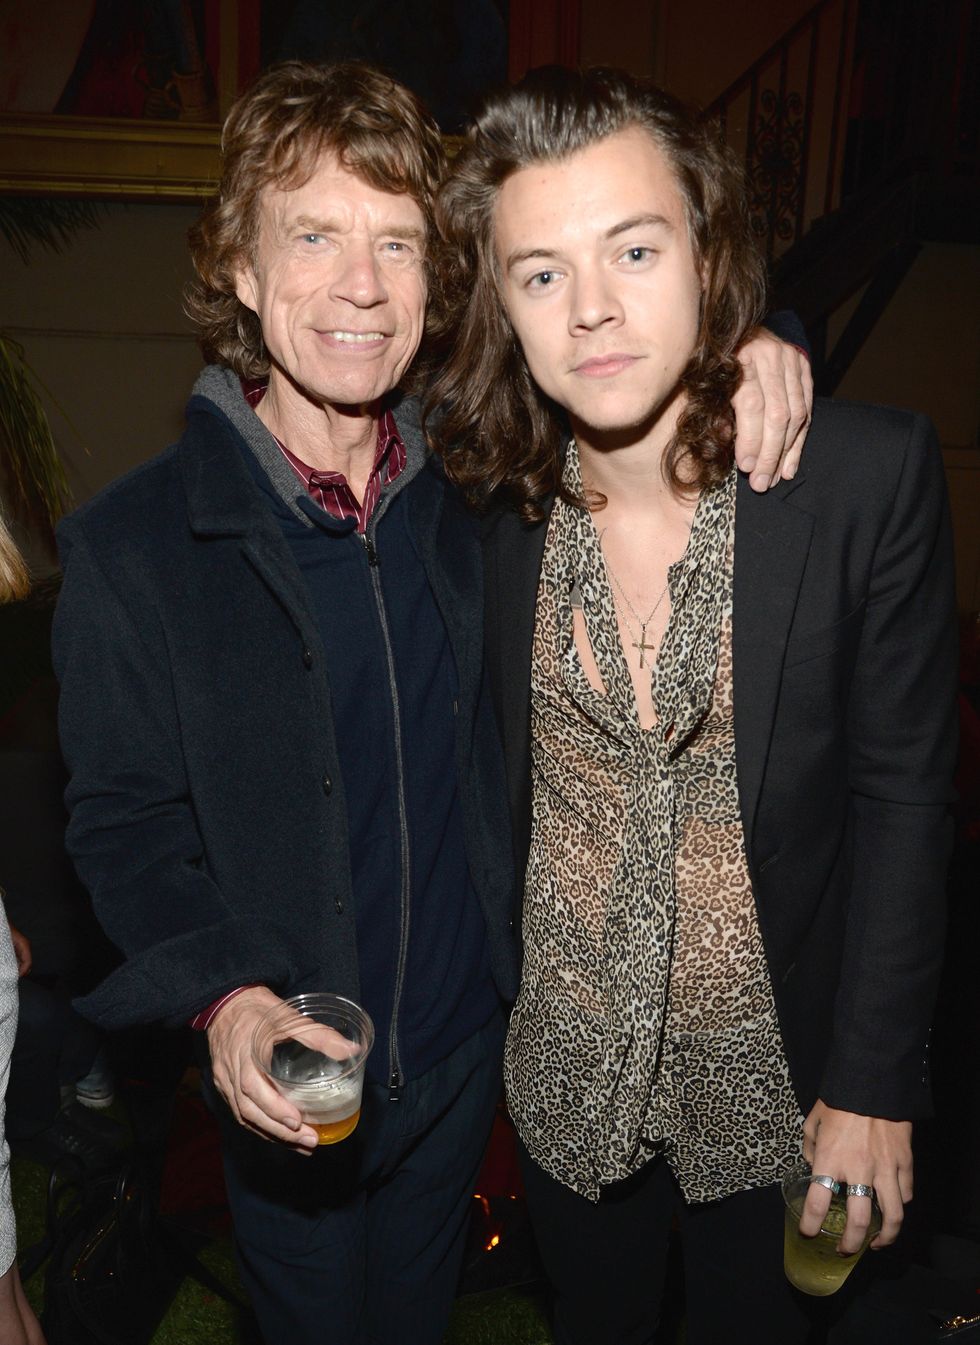 Mick Jagger mówi, że Harry Styles „nie ma takiego głosu jak ja ani nie porusza się na scenie tak jak ja”